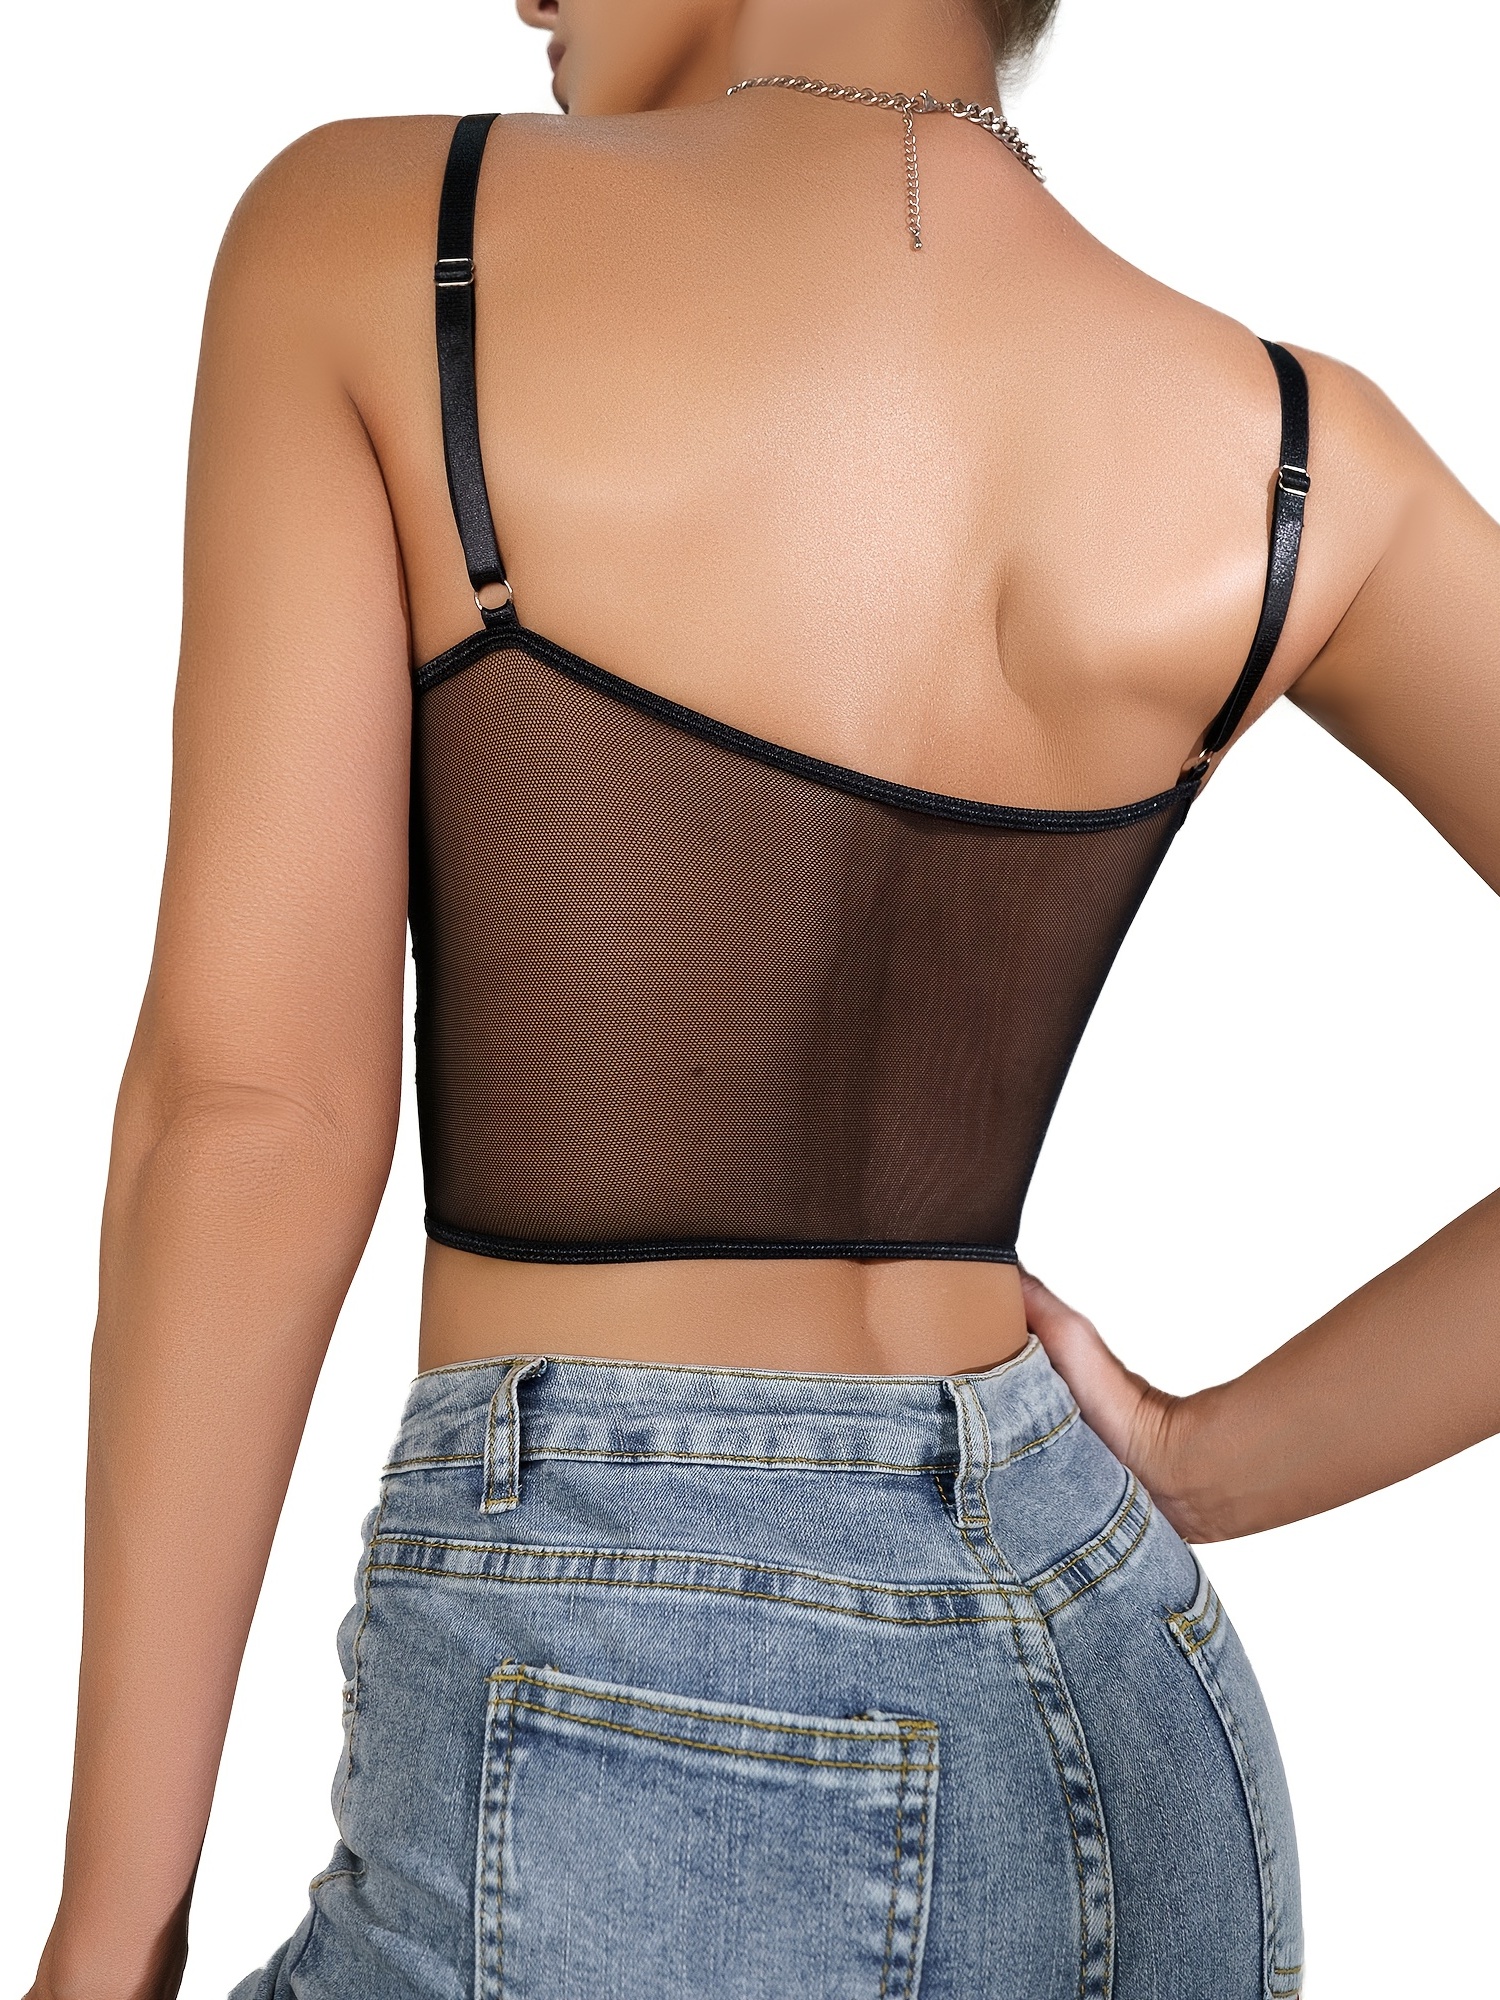 Lady Lace Lingerie Bra Bralette Vest Crop Tops Underwear Cami Tank  Sleepwear - Black